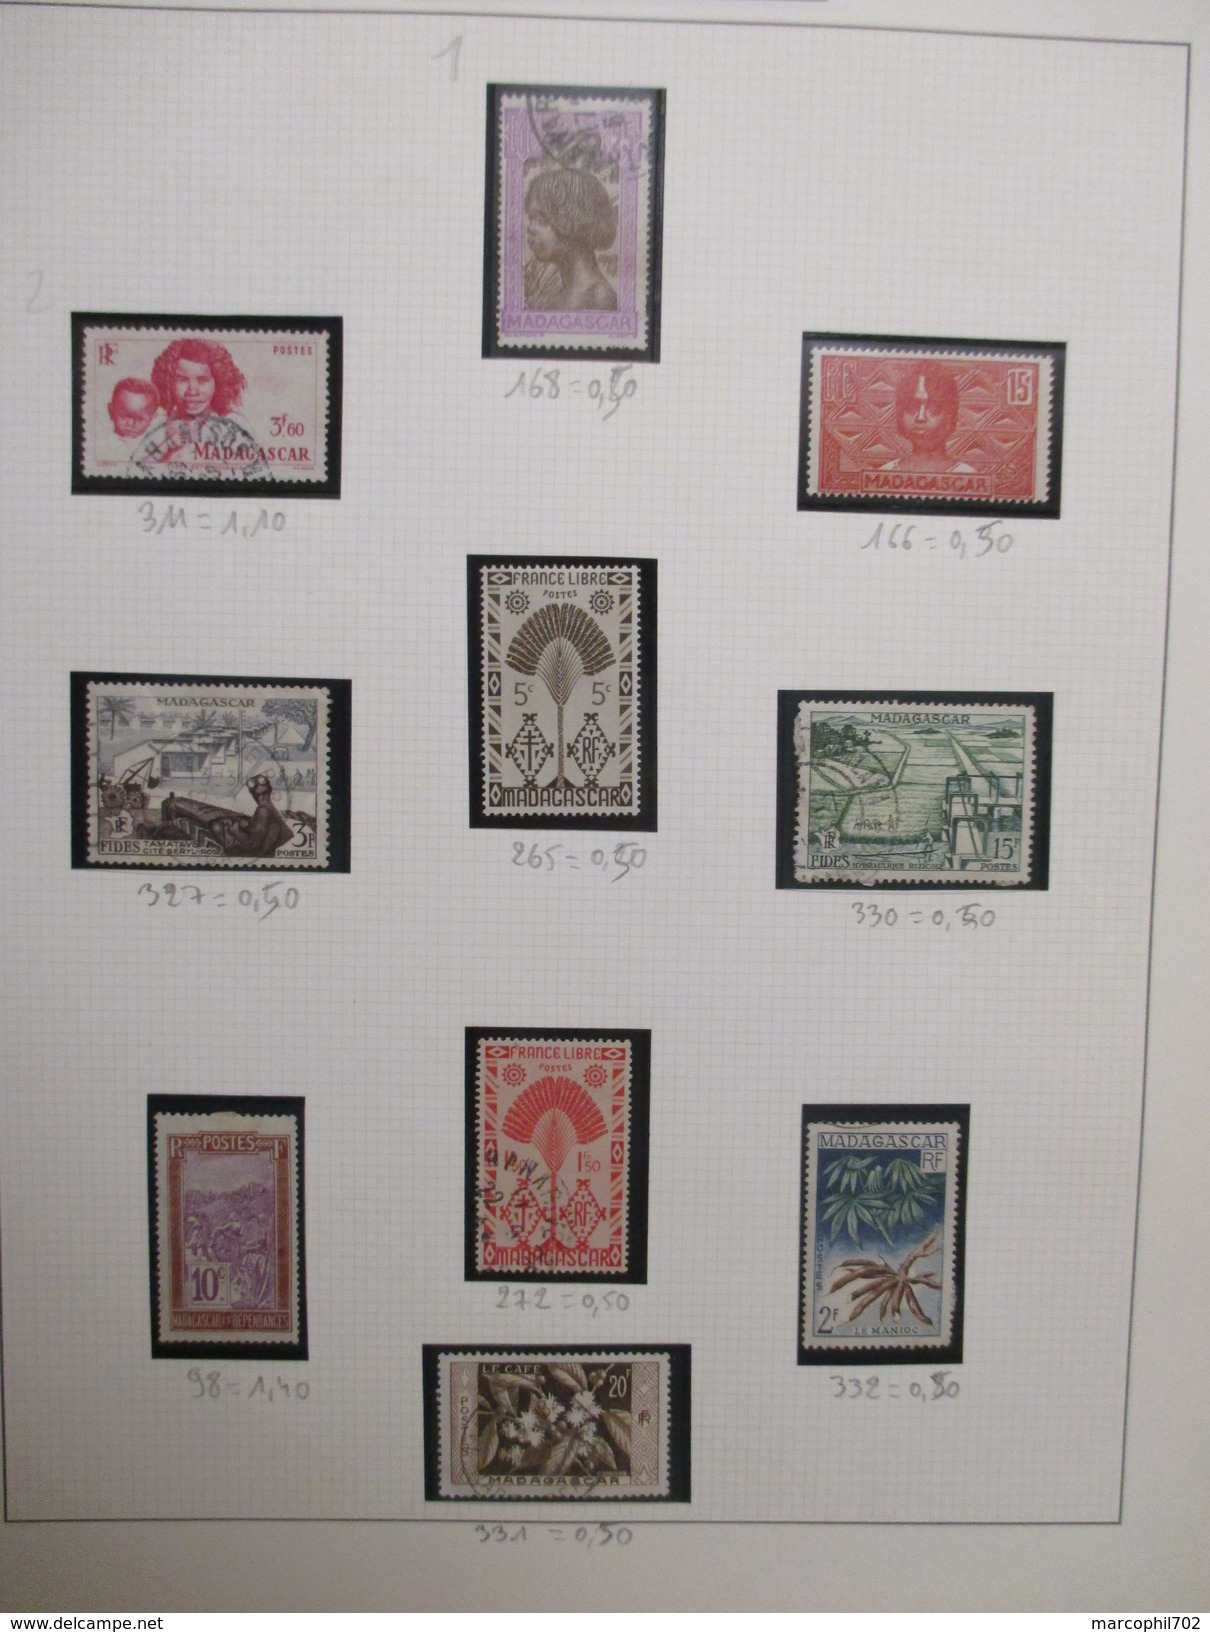 petit lot de timbres anciennes colonnies francaise  ces timbres sont neuf ou charnieres ou oblitérés 2